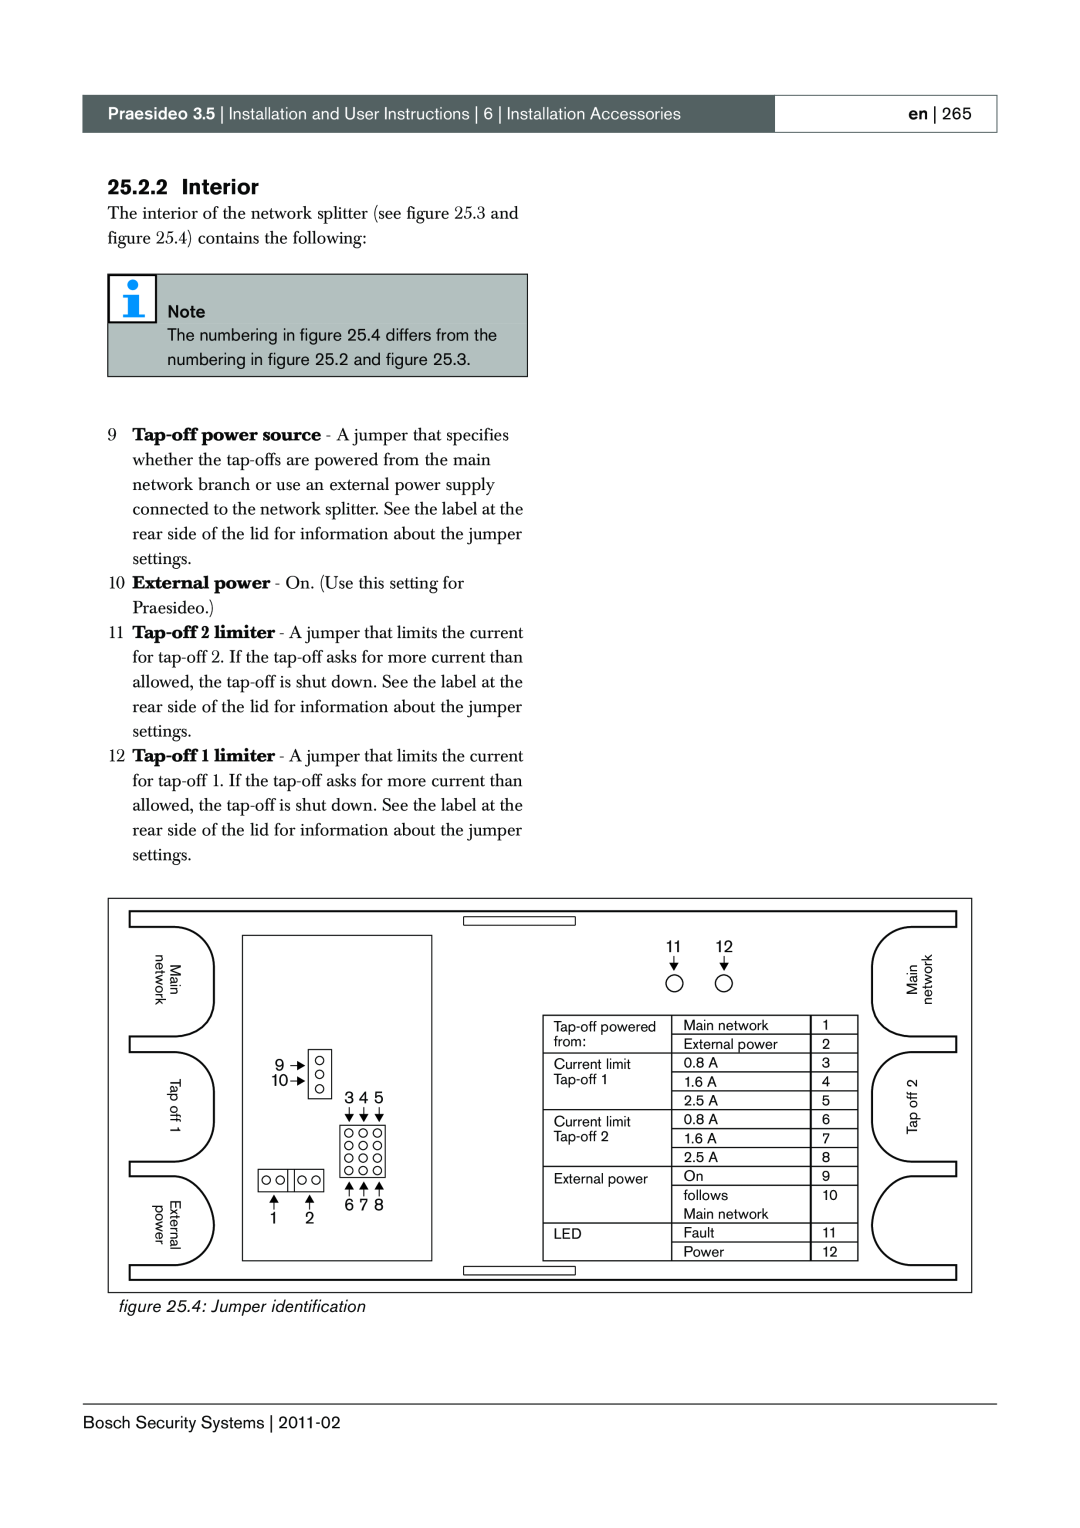 Bosch Appliances 3.5 manual Interior, 4: Jumper identification 